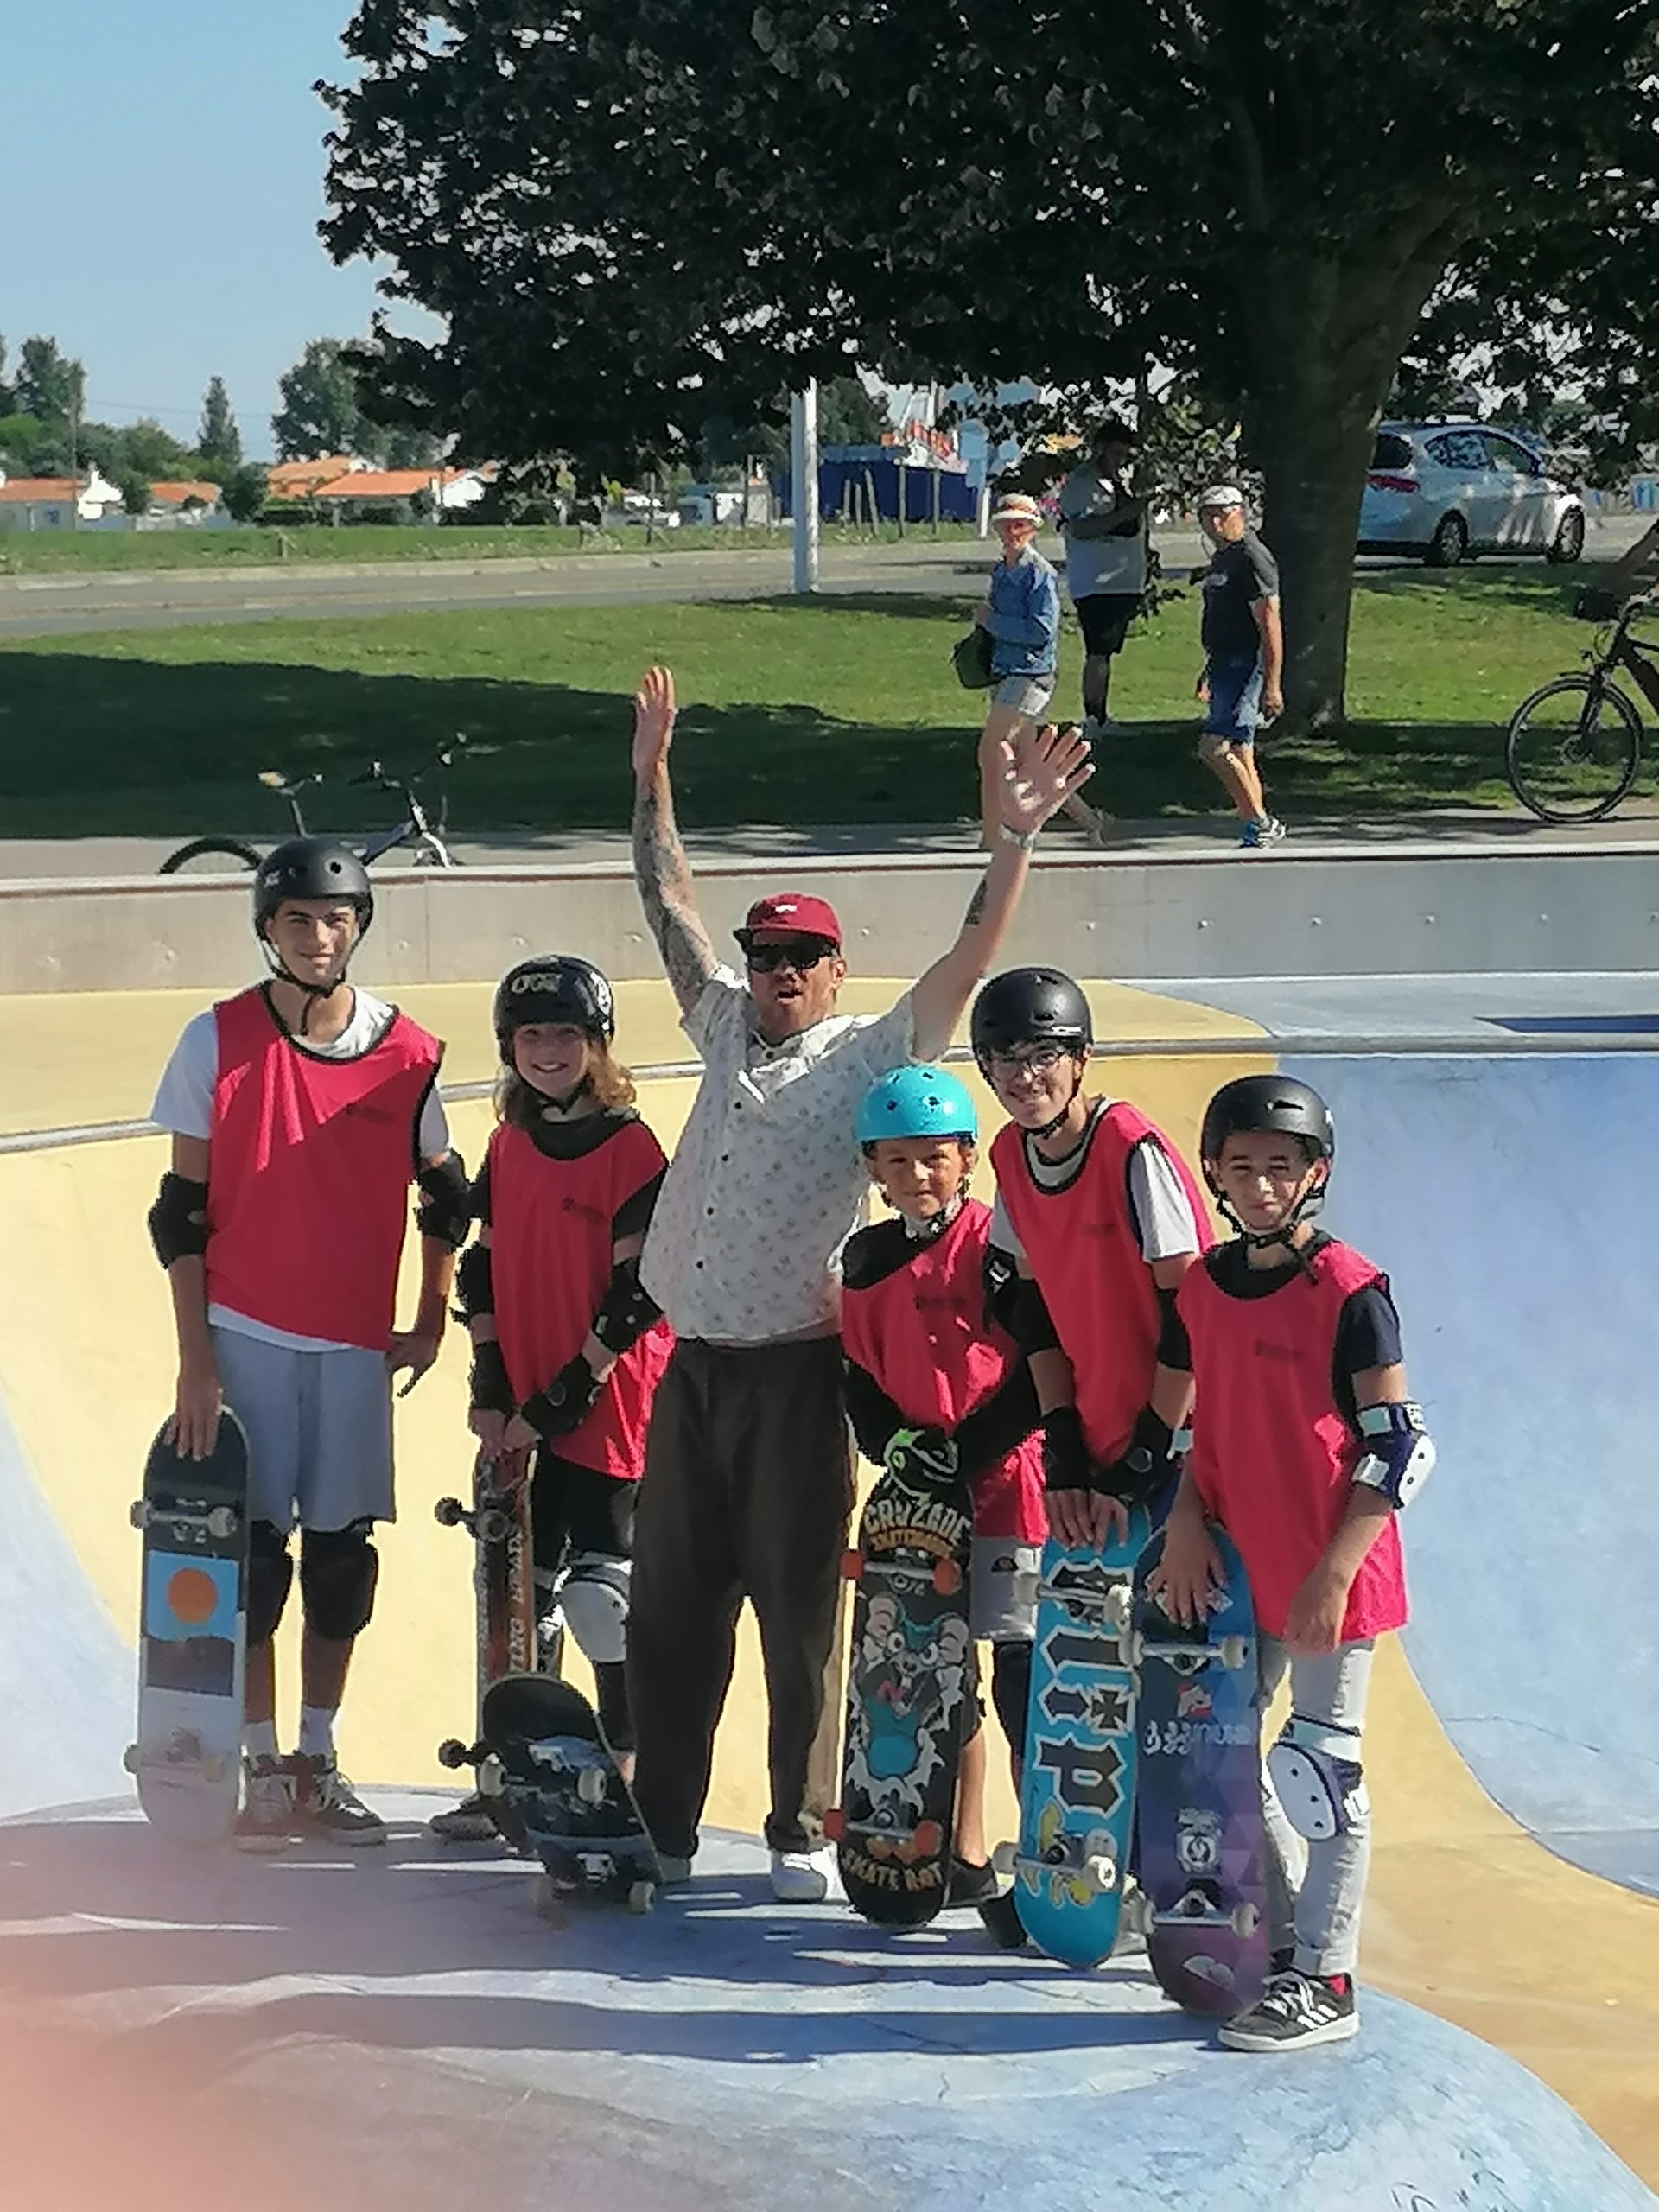 École de Skate Vendée 